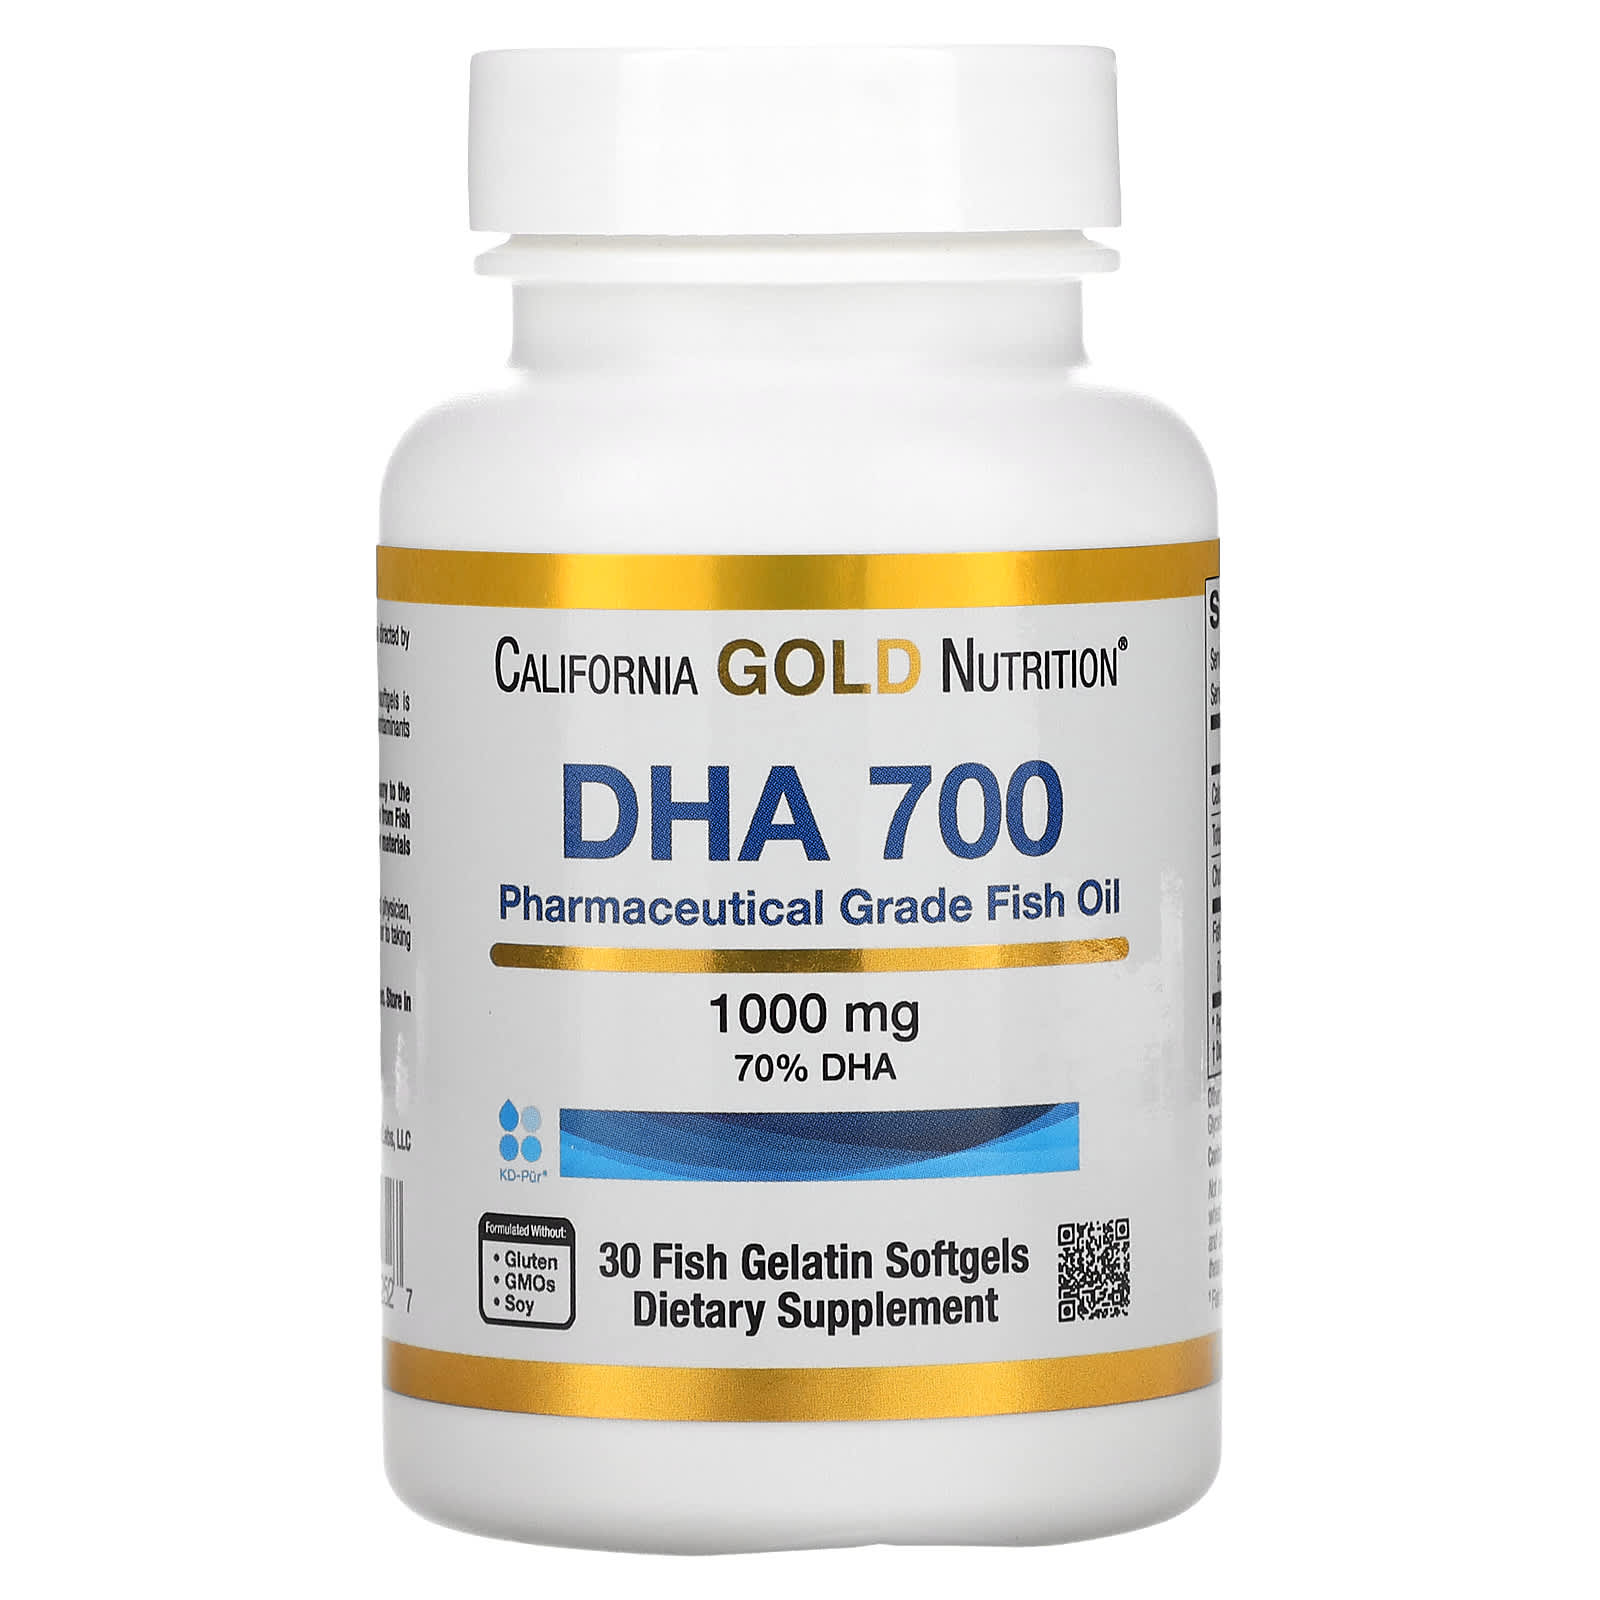 Заказать California Gold Nutrition, DHA 700, рыбий жир фармацевтической степени чистоты, 1000 мг, 30 рыбно-желатиновых капсул